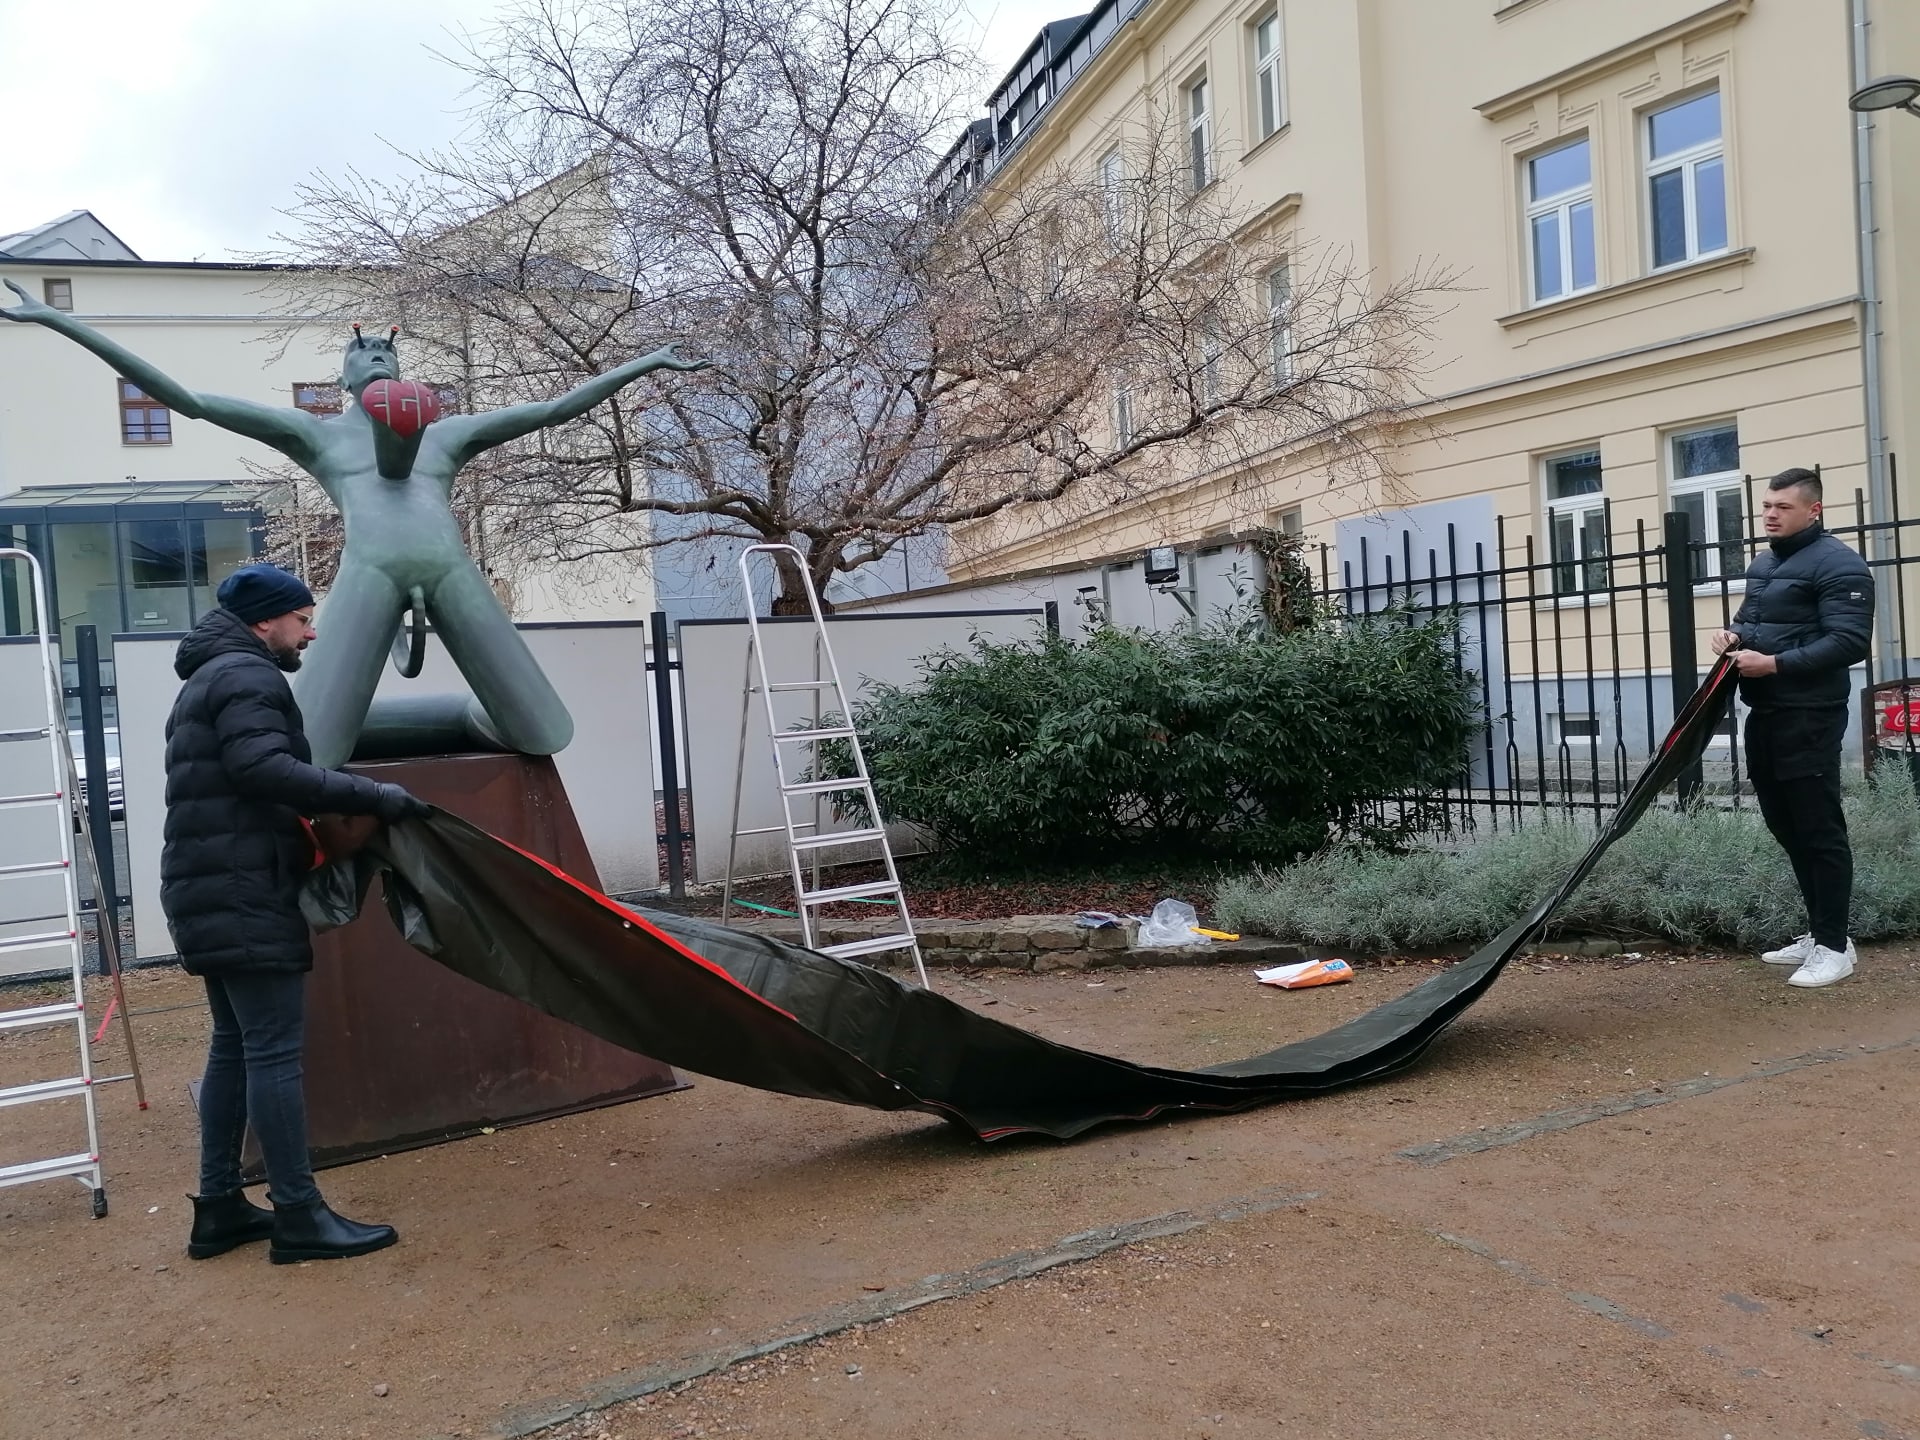 Zahalování skulptury Ego v Opavě sochaře Libora Hurdy, která pobouřila veřejnost.